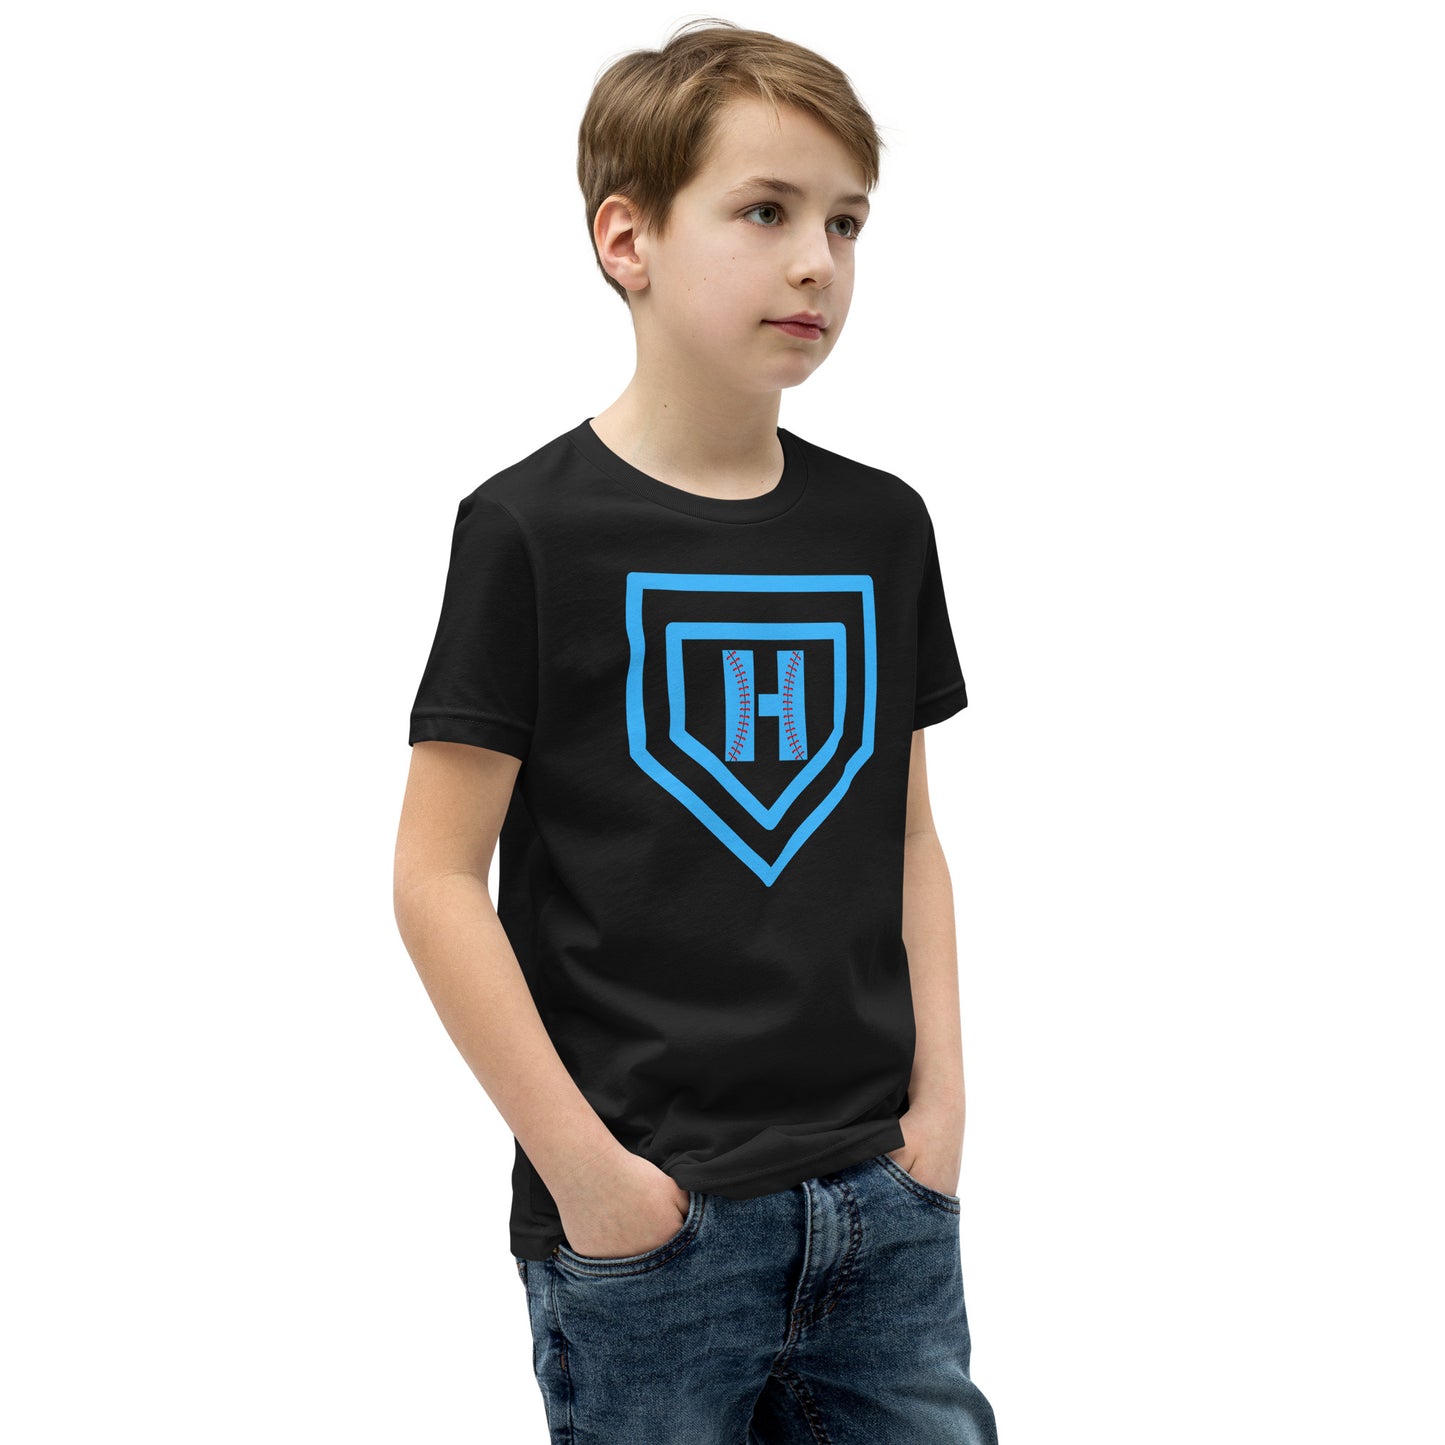 Blue H Seam Logo Youth Short Sleeve T-Shirt